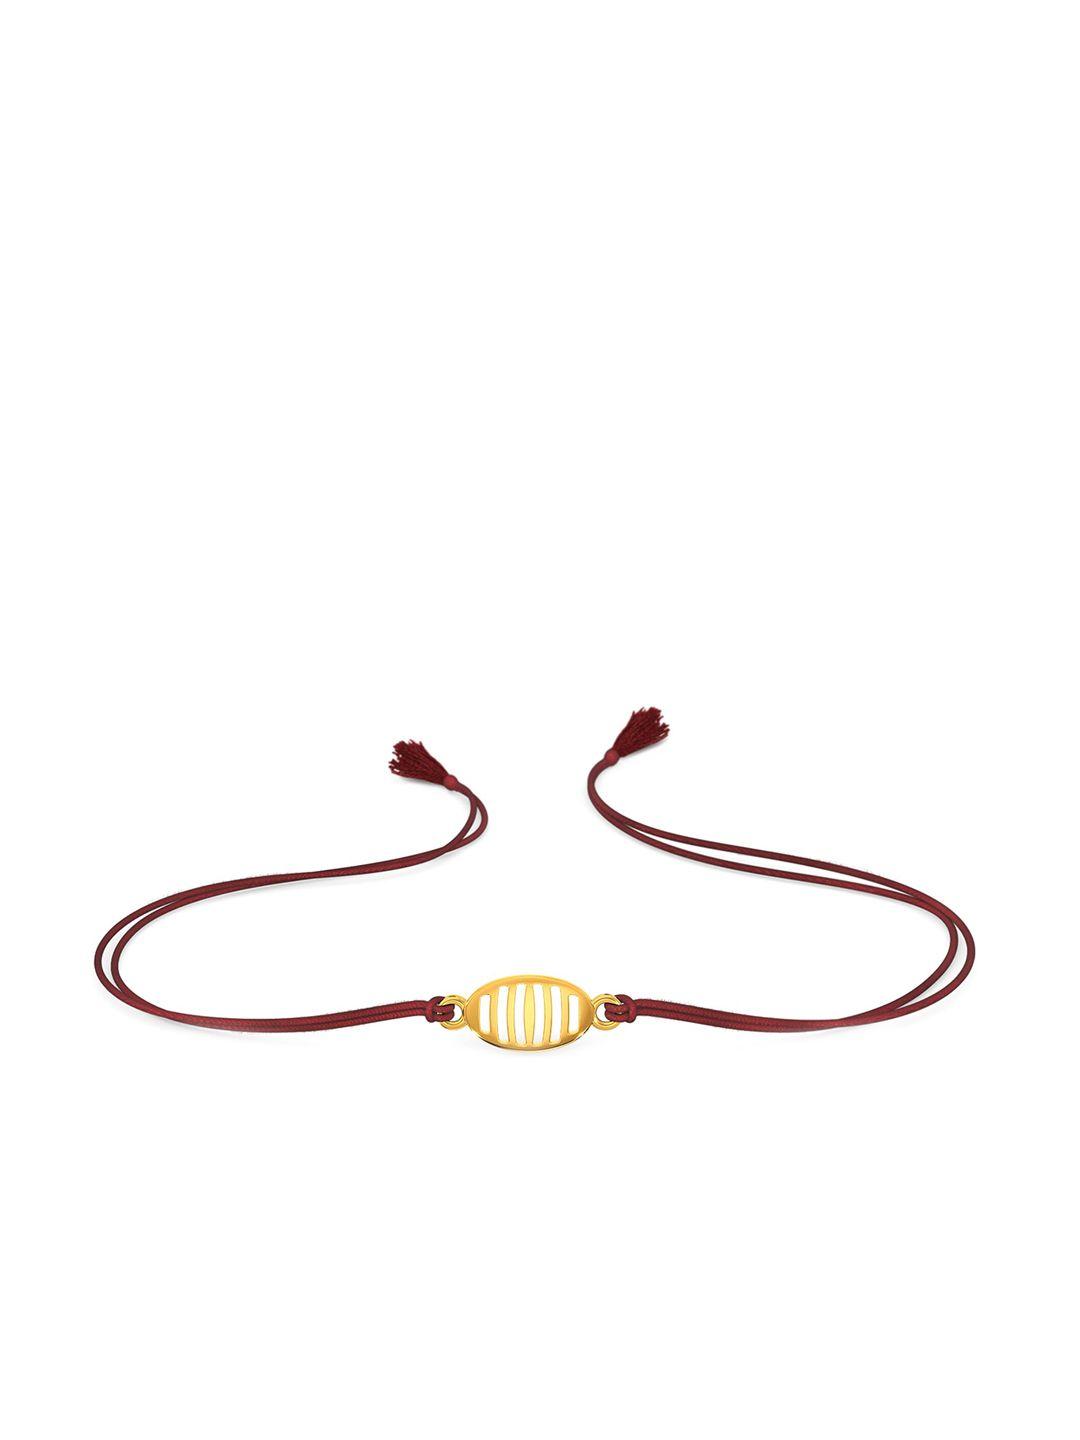 melorra 18kt tied together gold bracelets rakhi